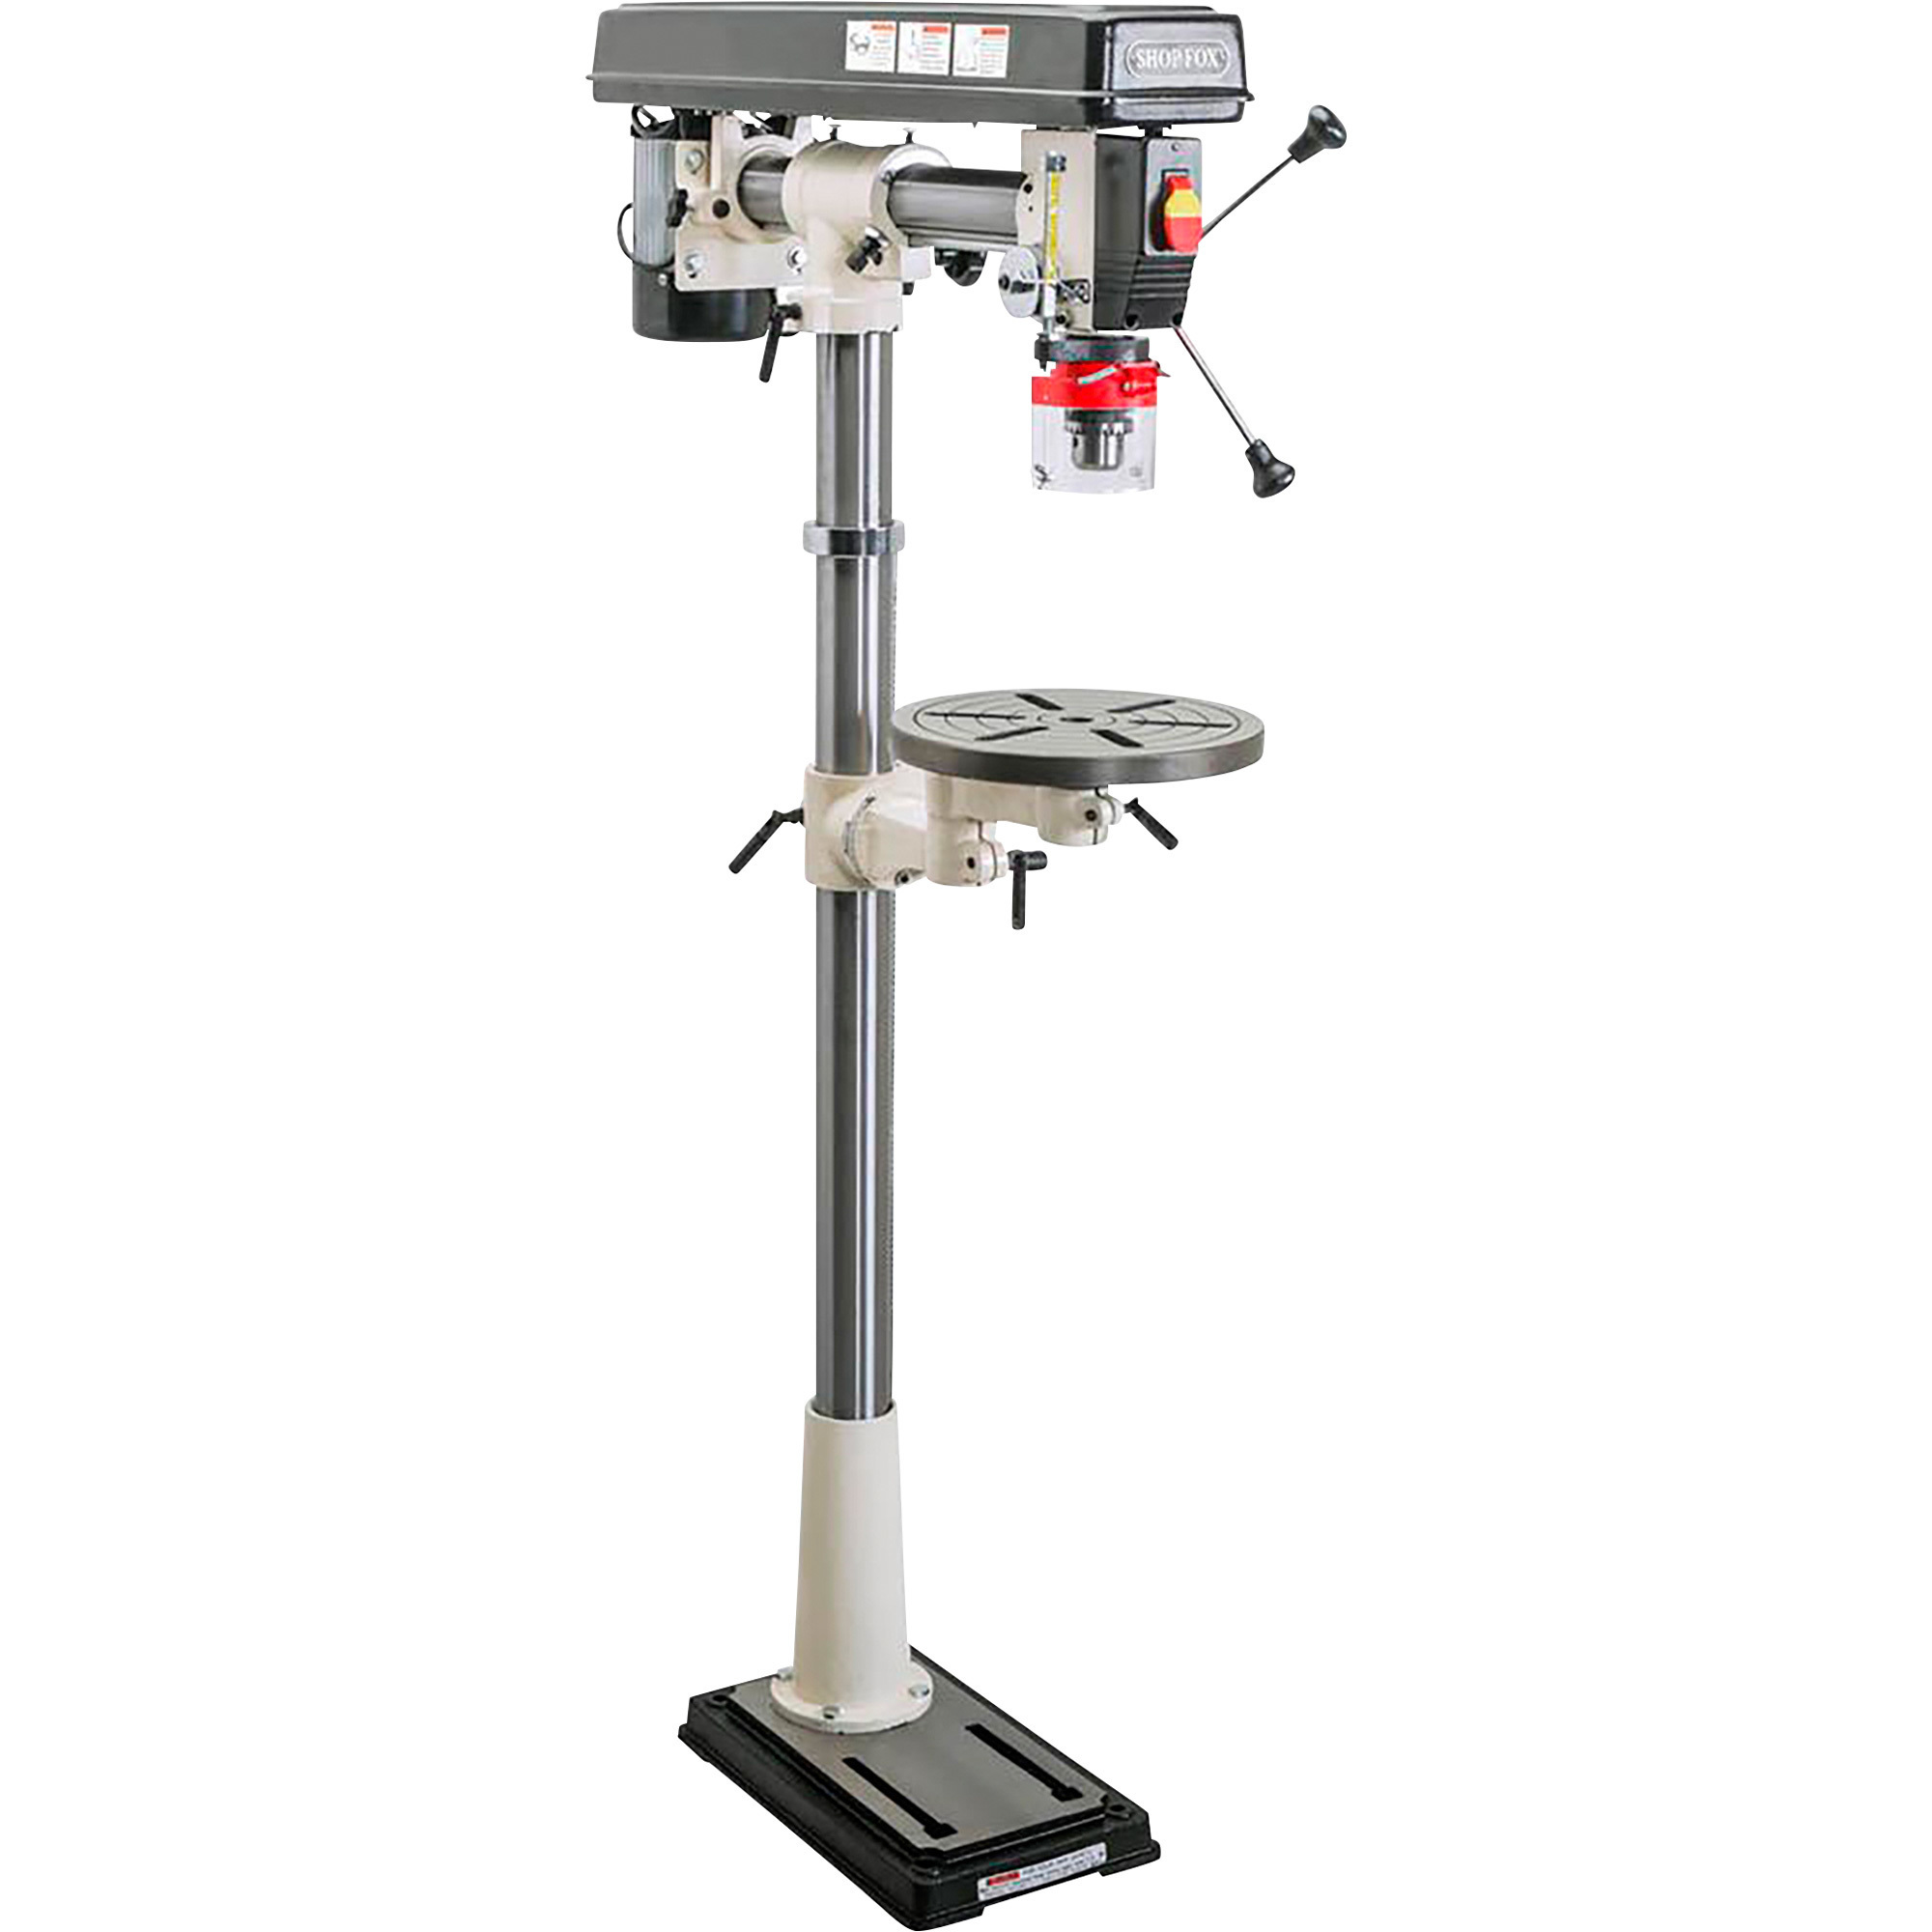 Shop Fox Radial Drill Press - 1/2 HP, Model W1670